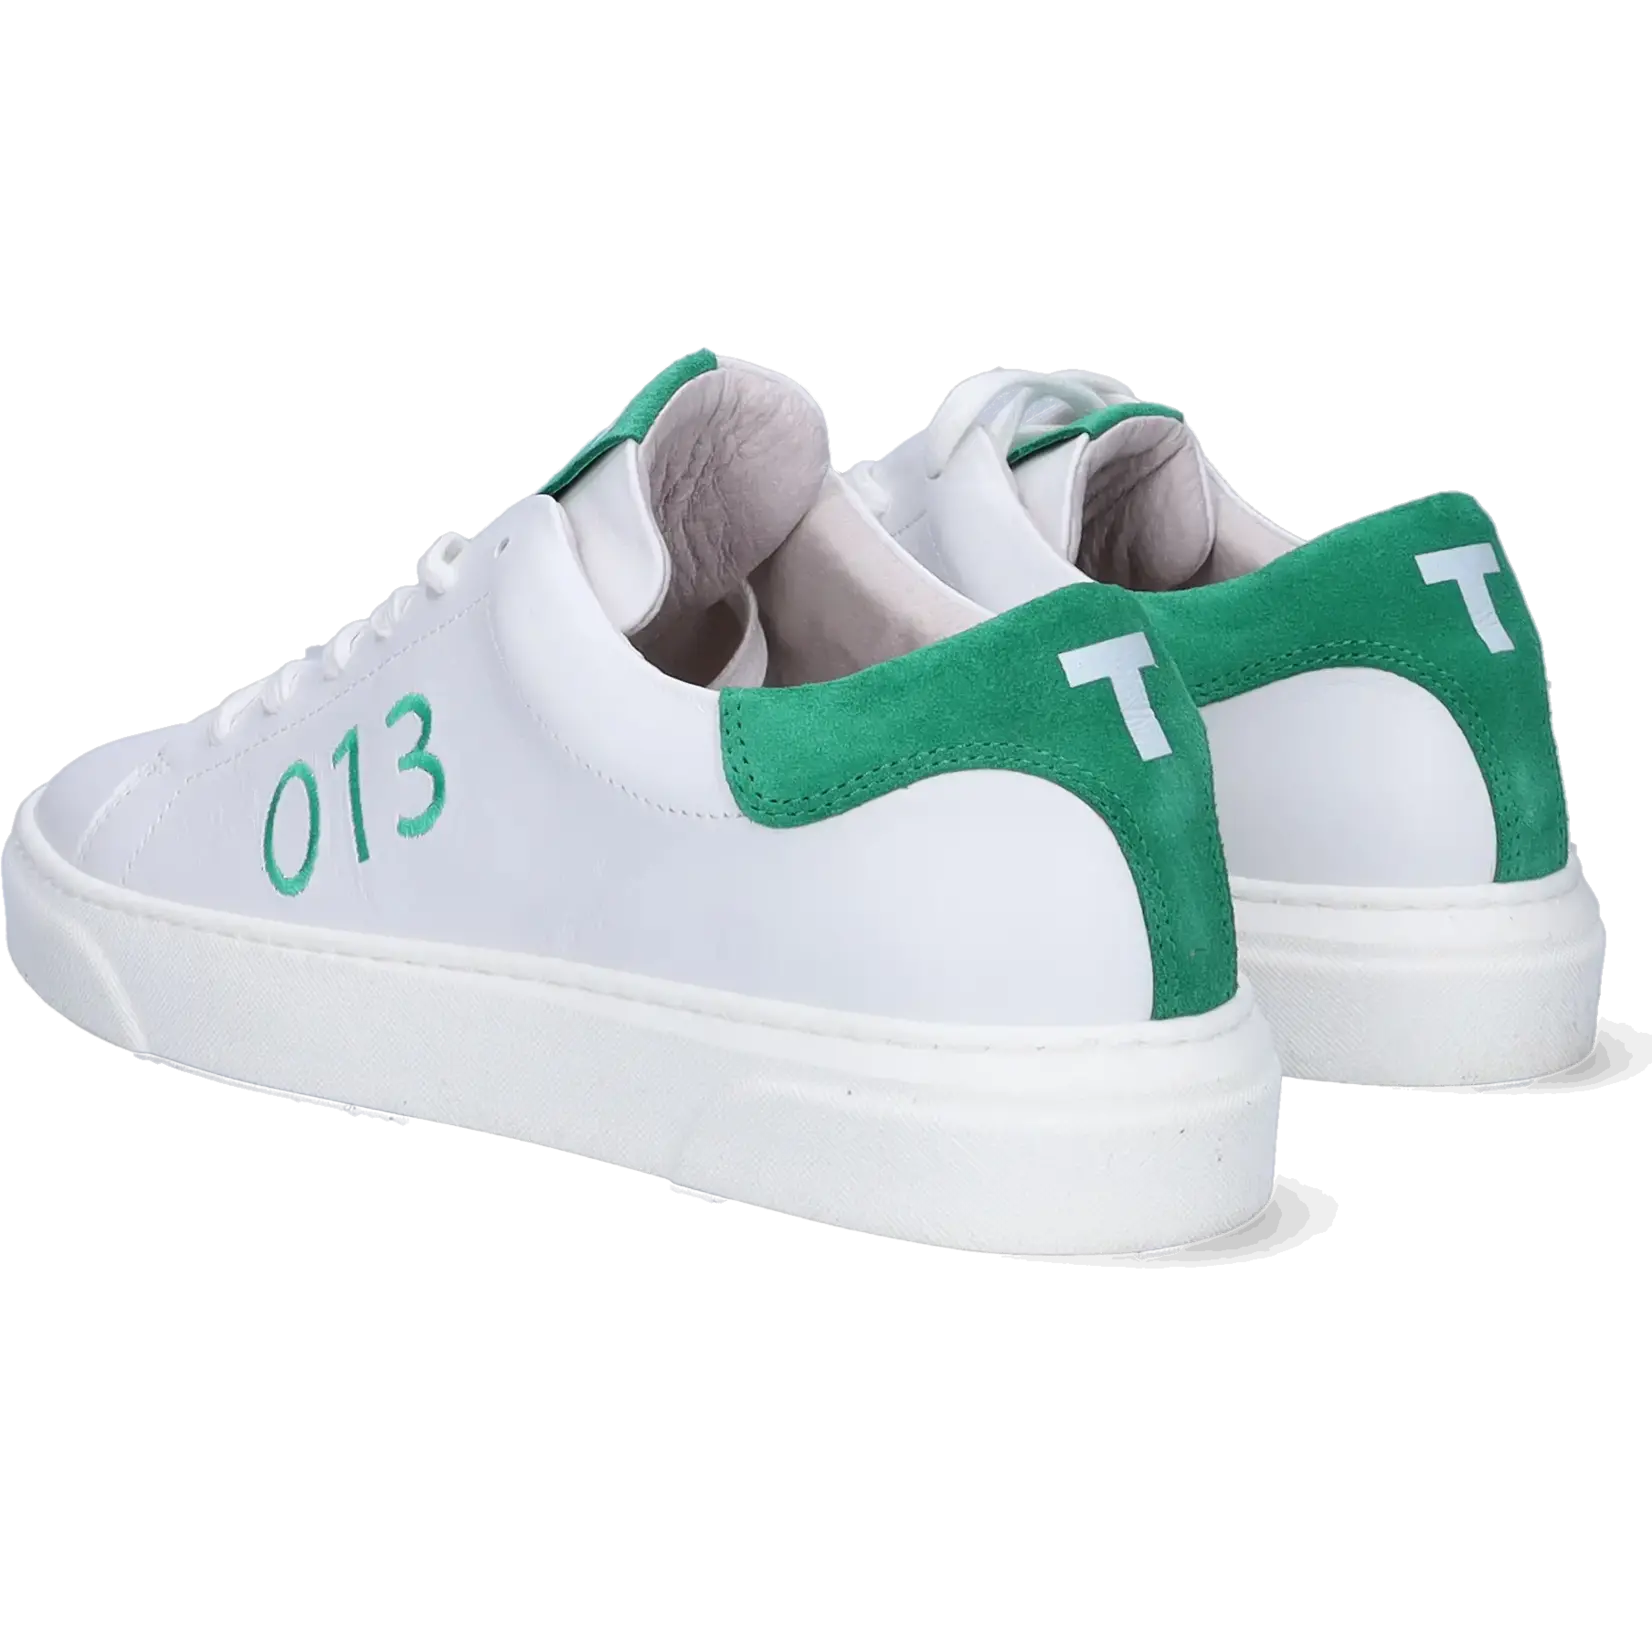 JJ Footwear Tilburg - White/Green